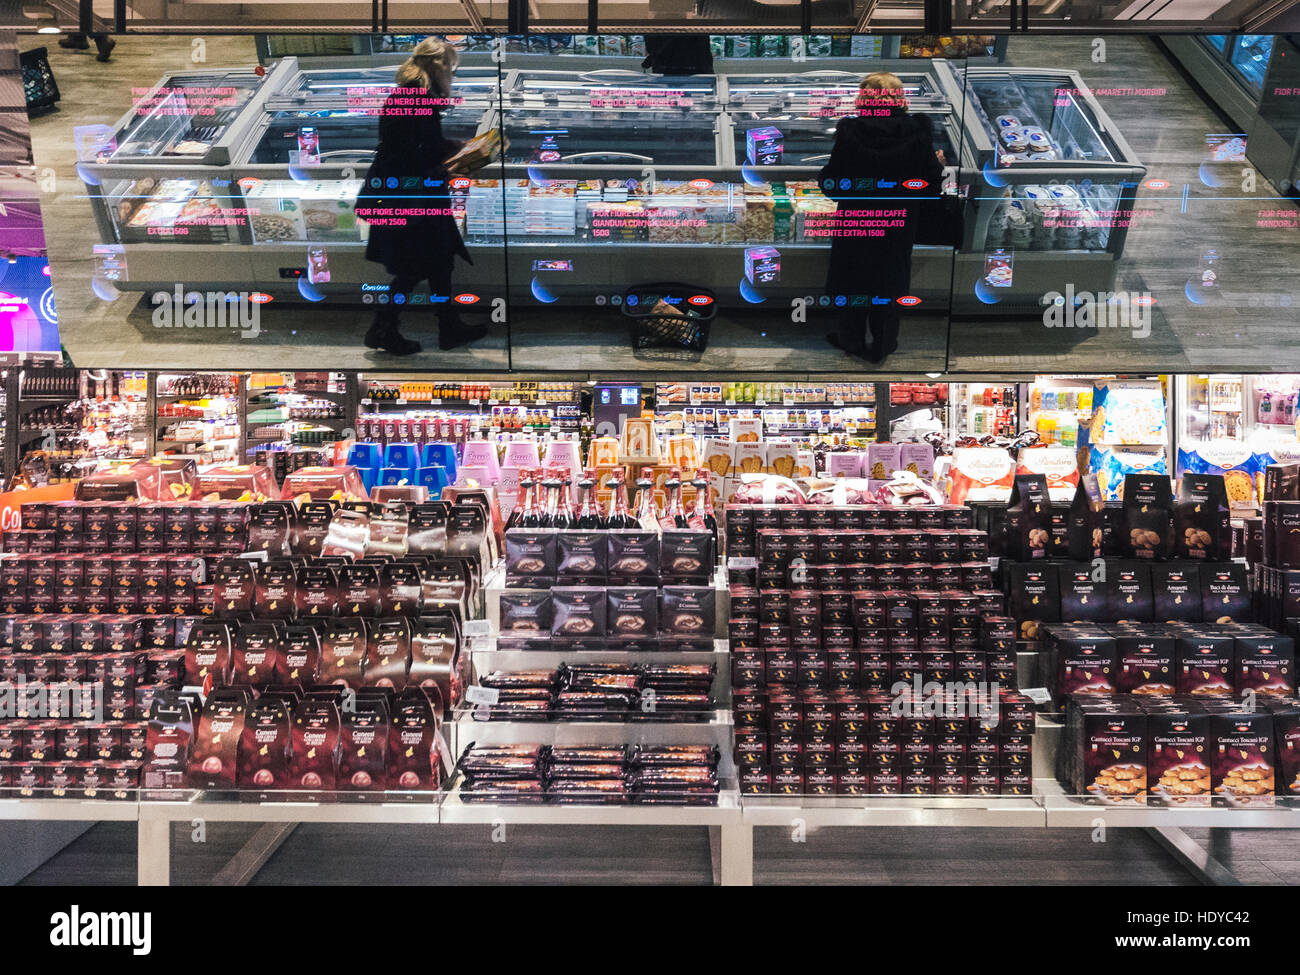 Coop Italia, la più grande catena di supermercati, ha collaborato con  Accenture per reinventare l'esperienza del cliente nel nuovo shop Foto  stock - Alamy